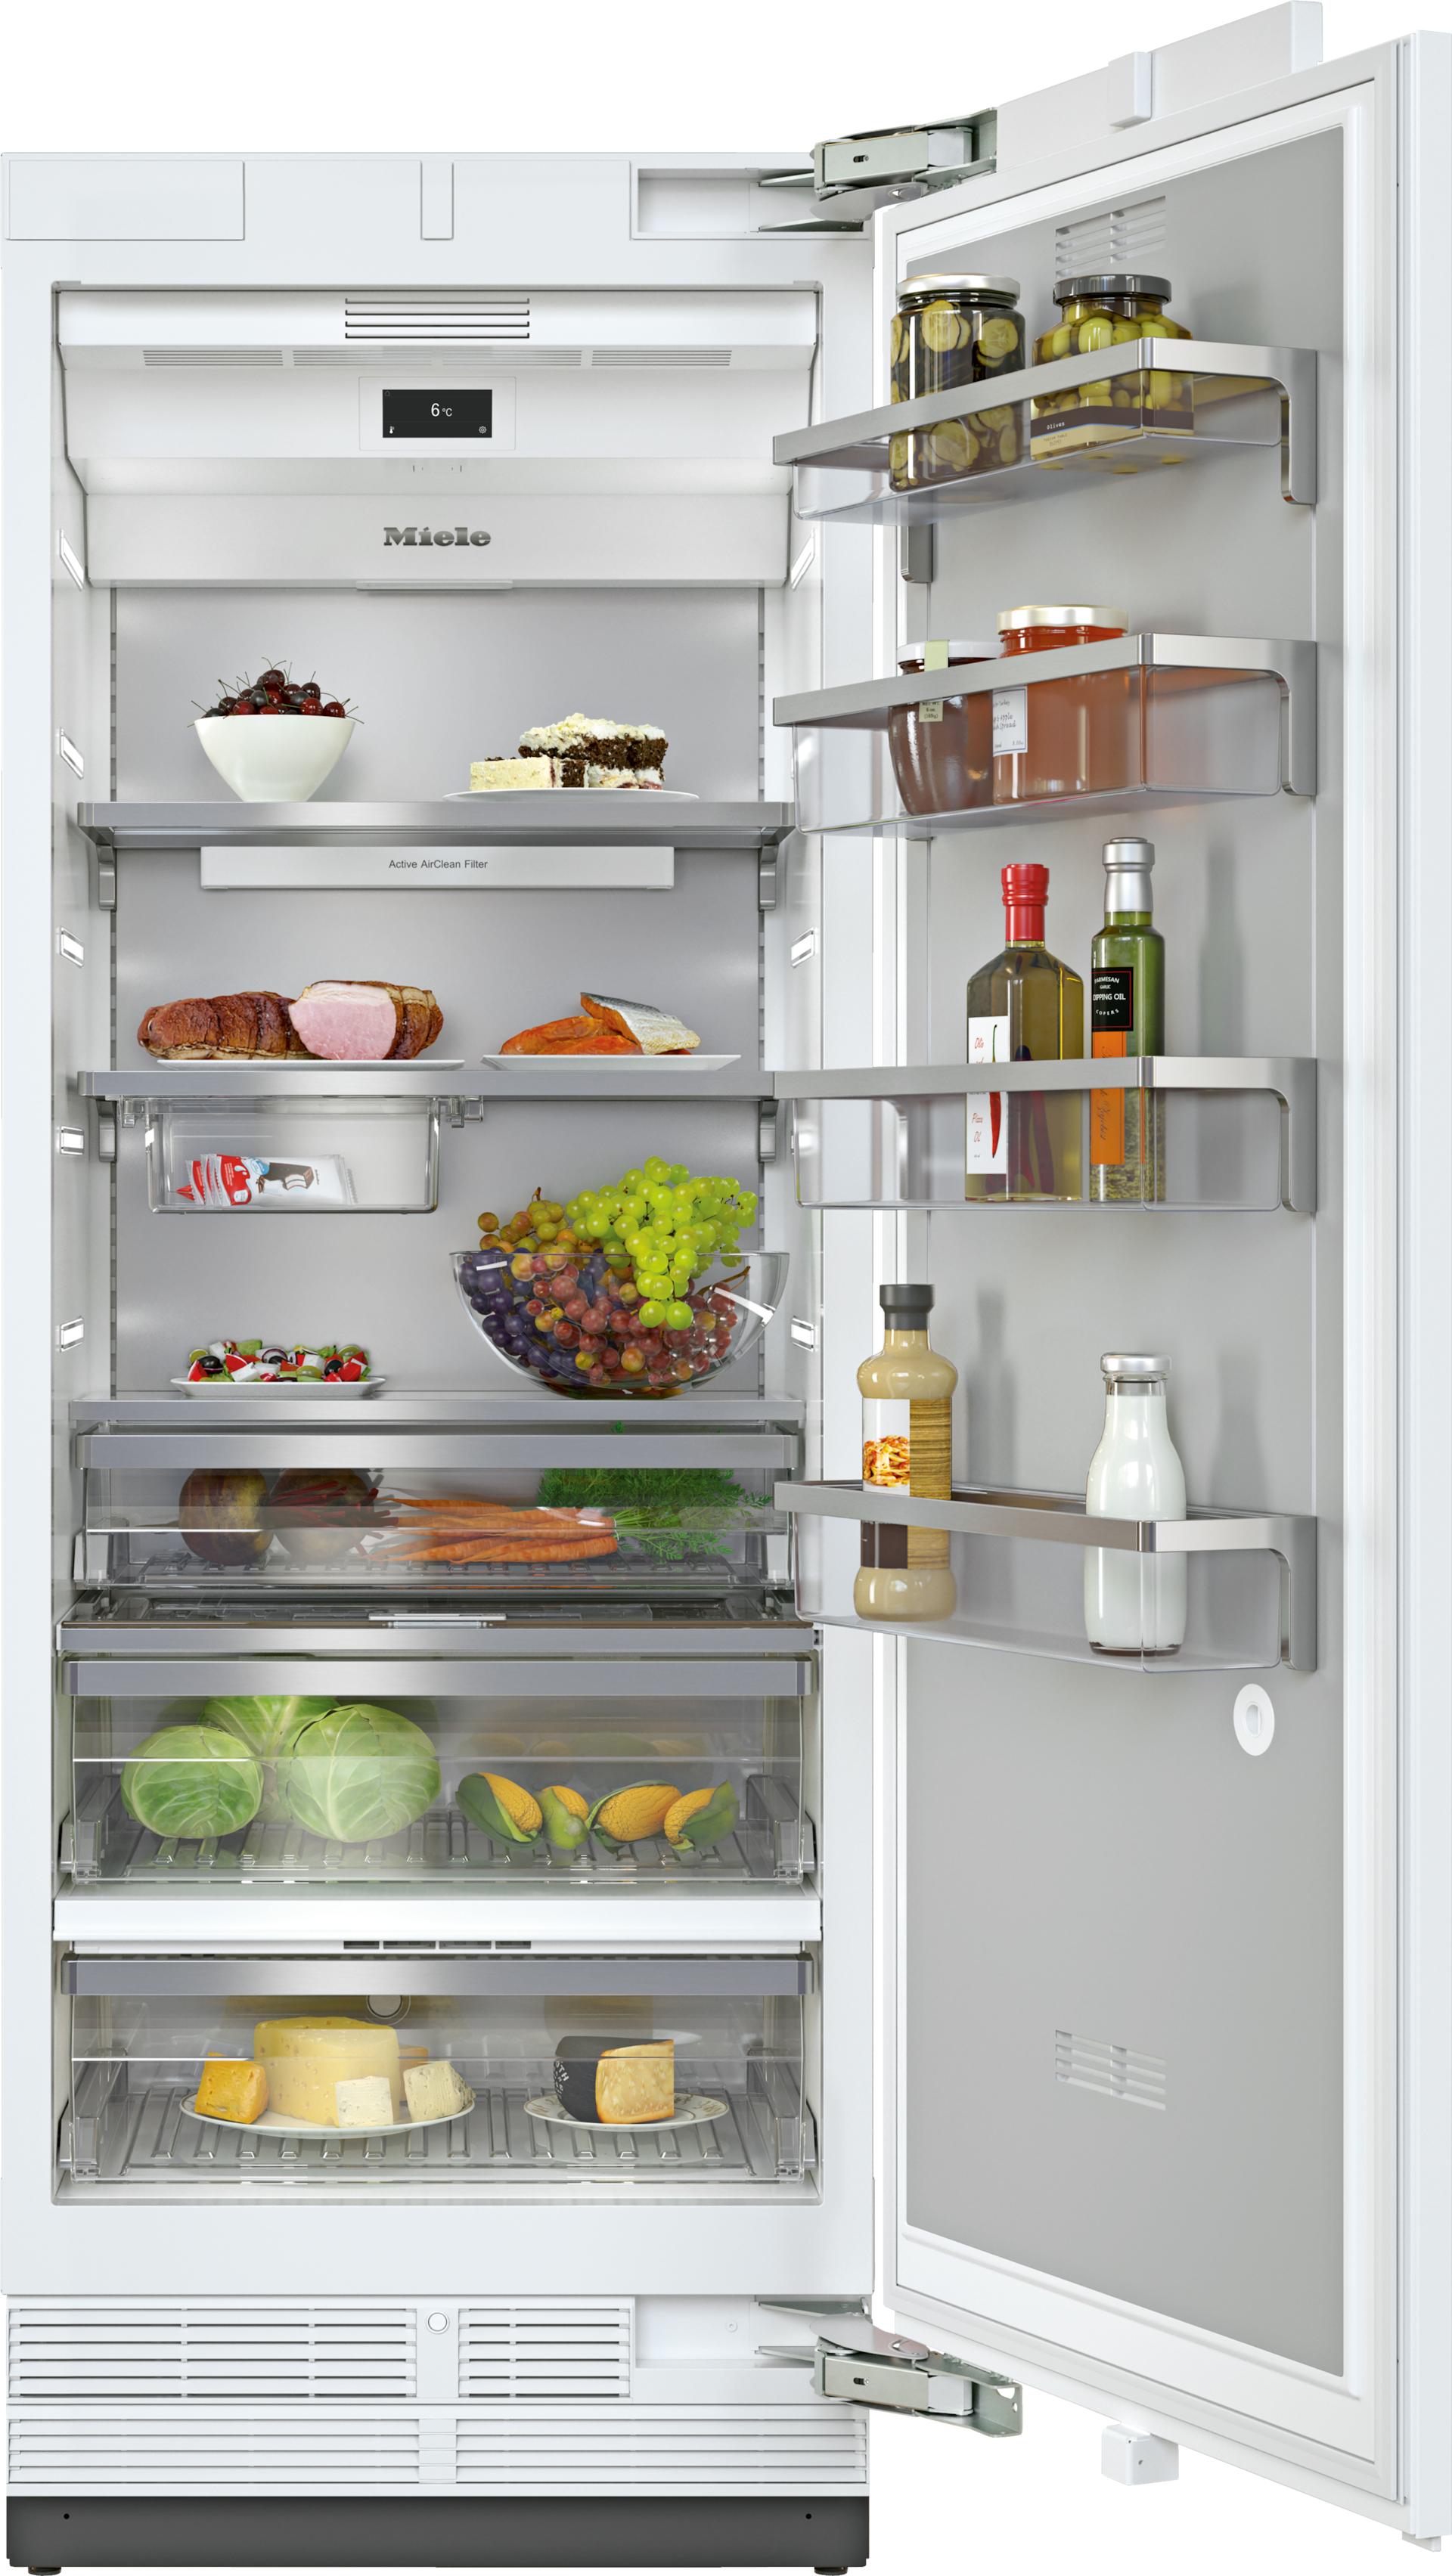 Refrigeration - K 2802 Vi - 1